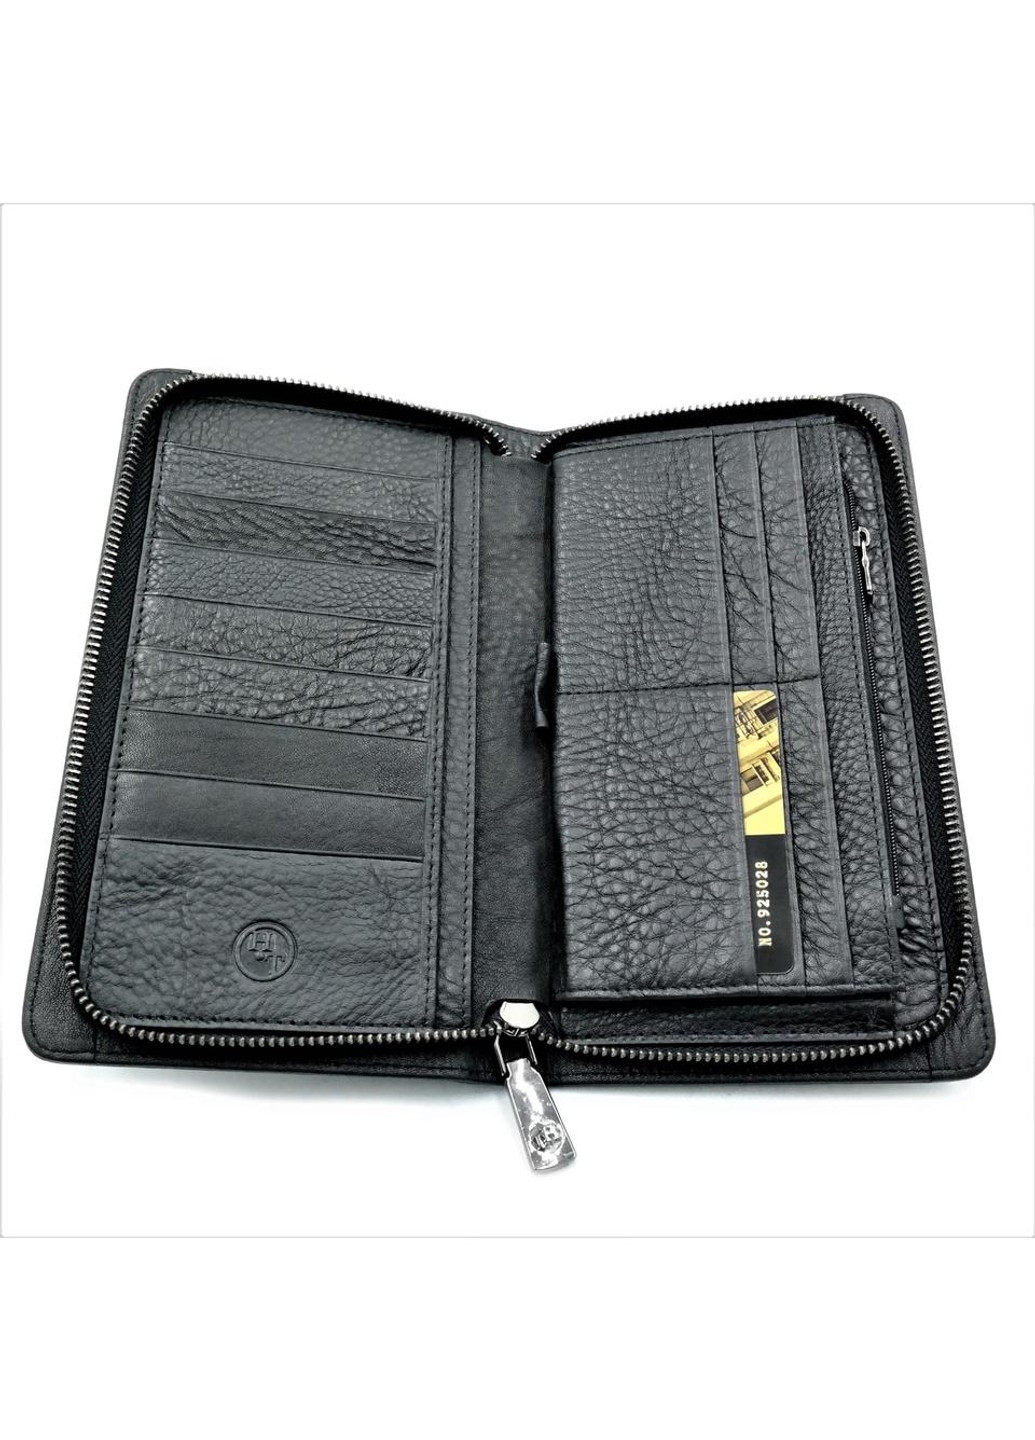 Мужской кожаный клатч-кошелек 22,5 х 12,5 х 3 см Черный wtro-212 Weatro (272950012)